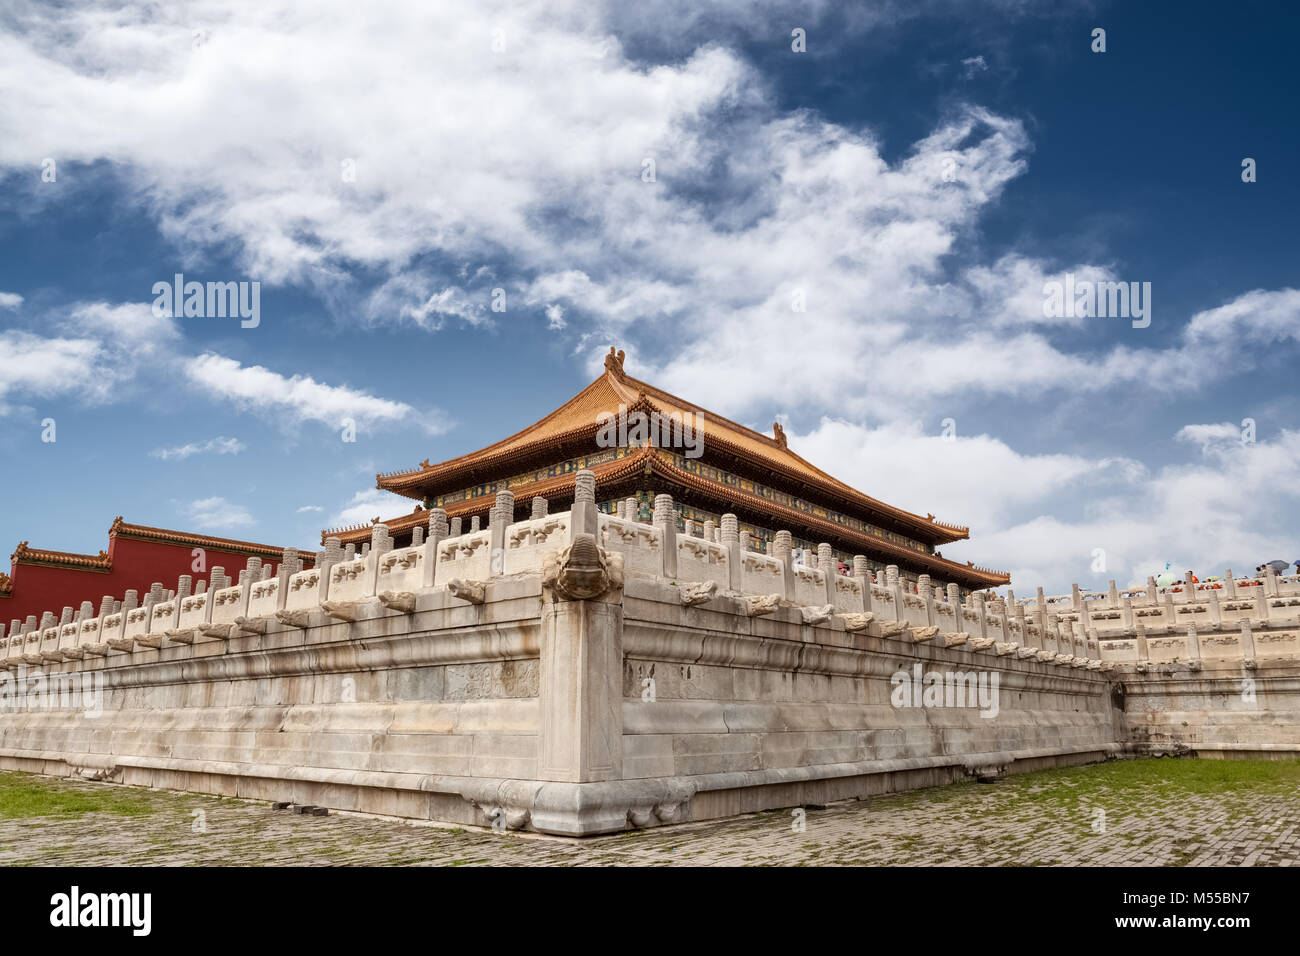 beijing forbidden city Stock Photo